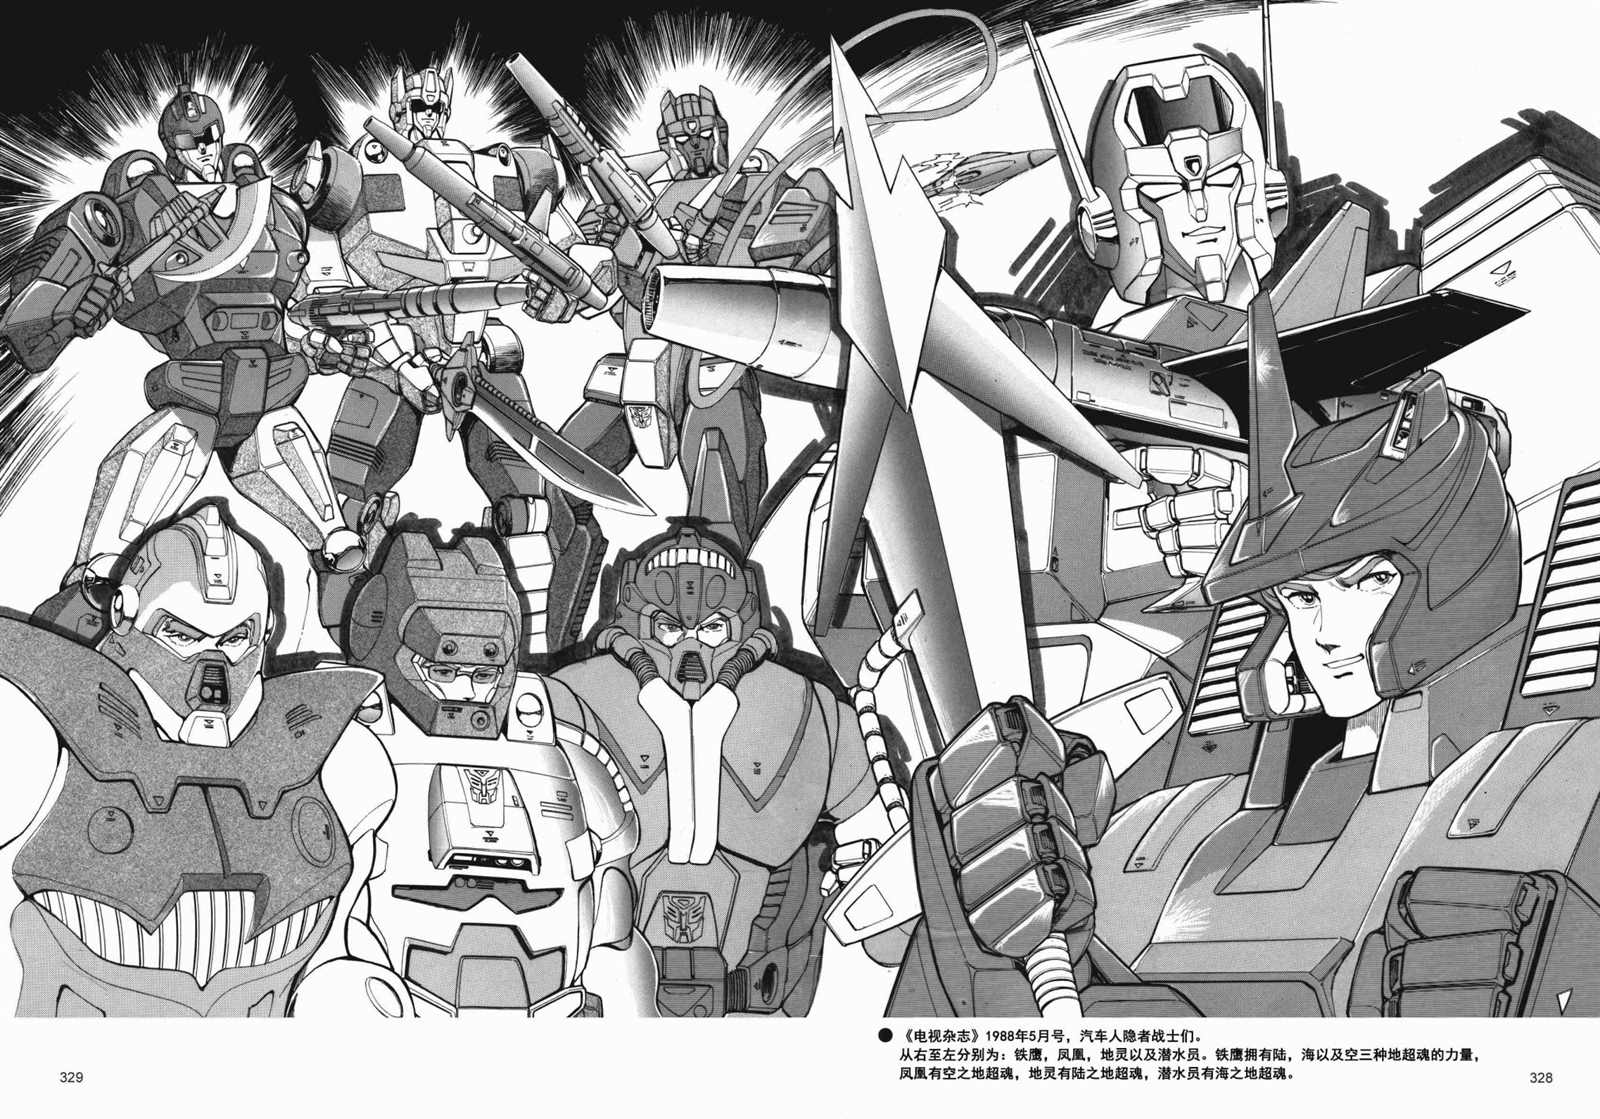 变形金刚日版G1杂志插画 - 战斗吧！超机械生命体变形金刚：超神勇者之力 - 1